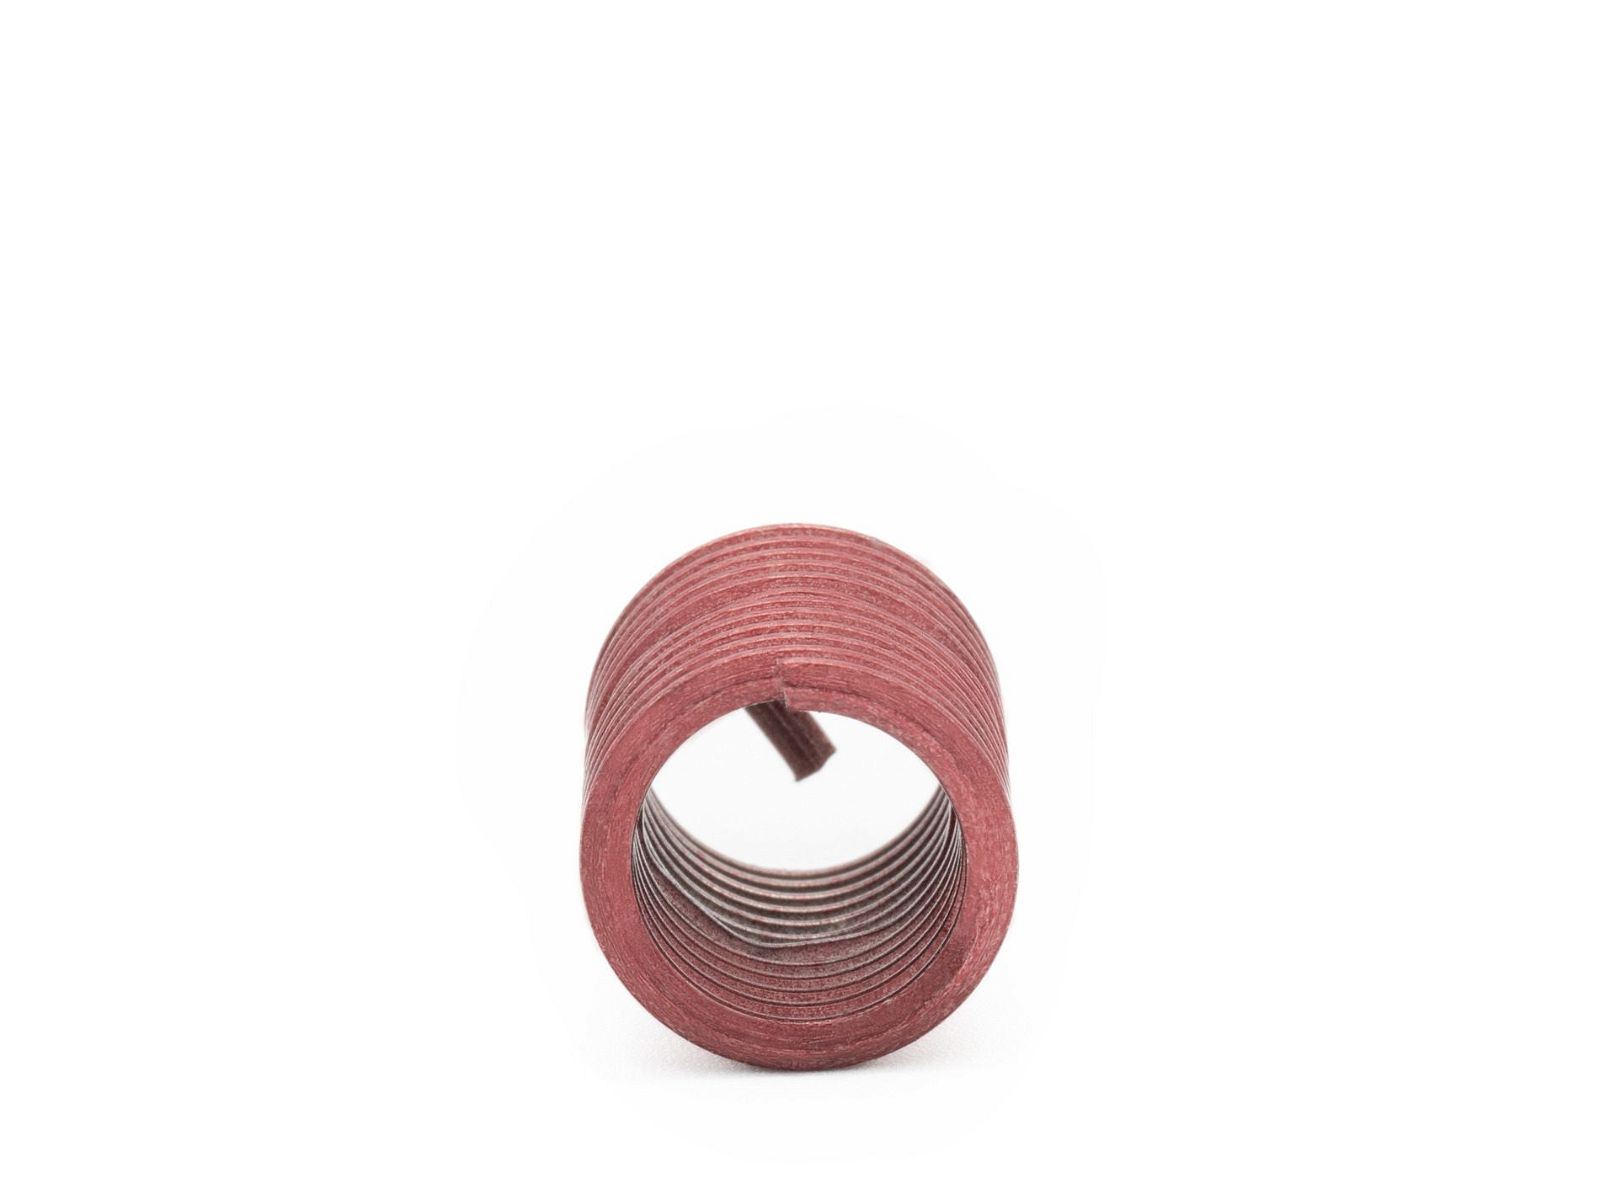 BaerCoil Wire Thread Inserts BSF 1/2 x 16 - 2.0 D (25.4 mm) - screw grip (screw locking) - 100 pcs.